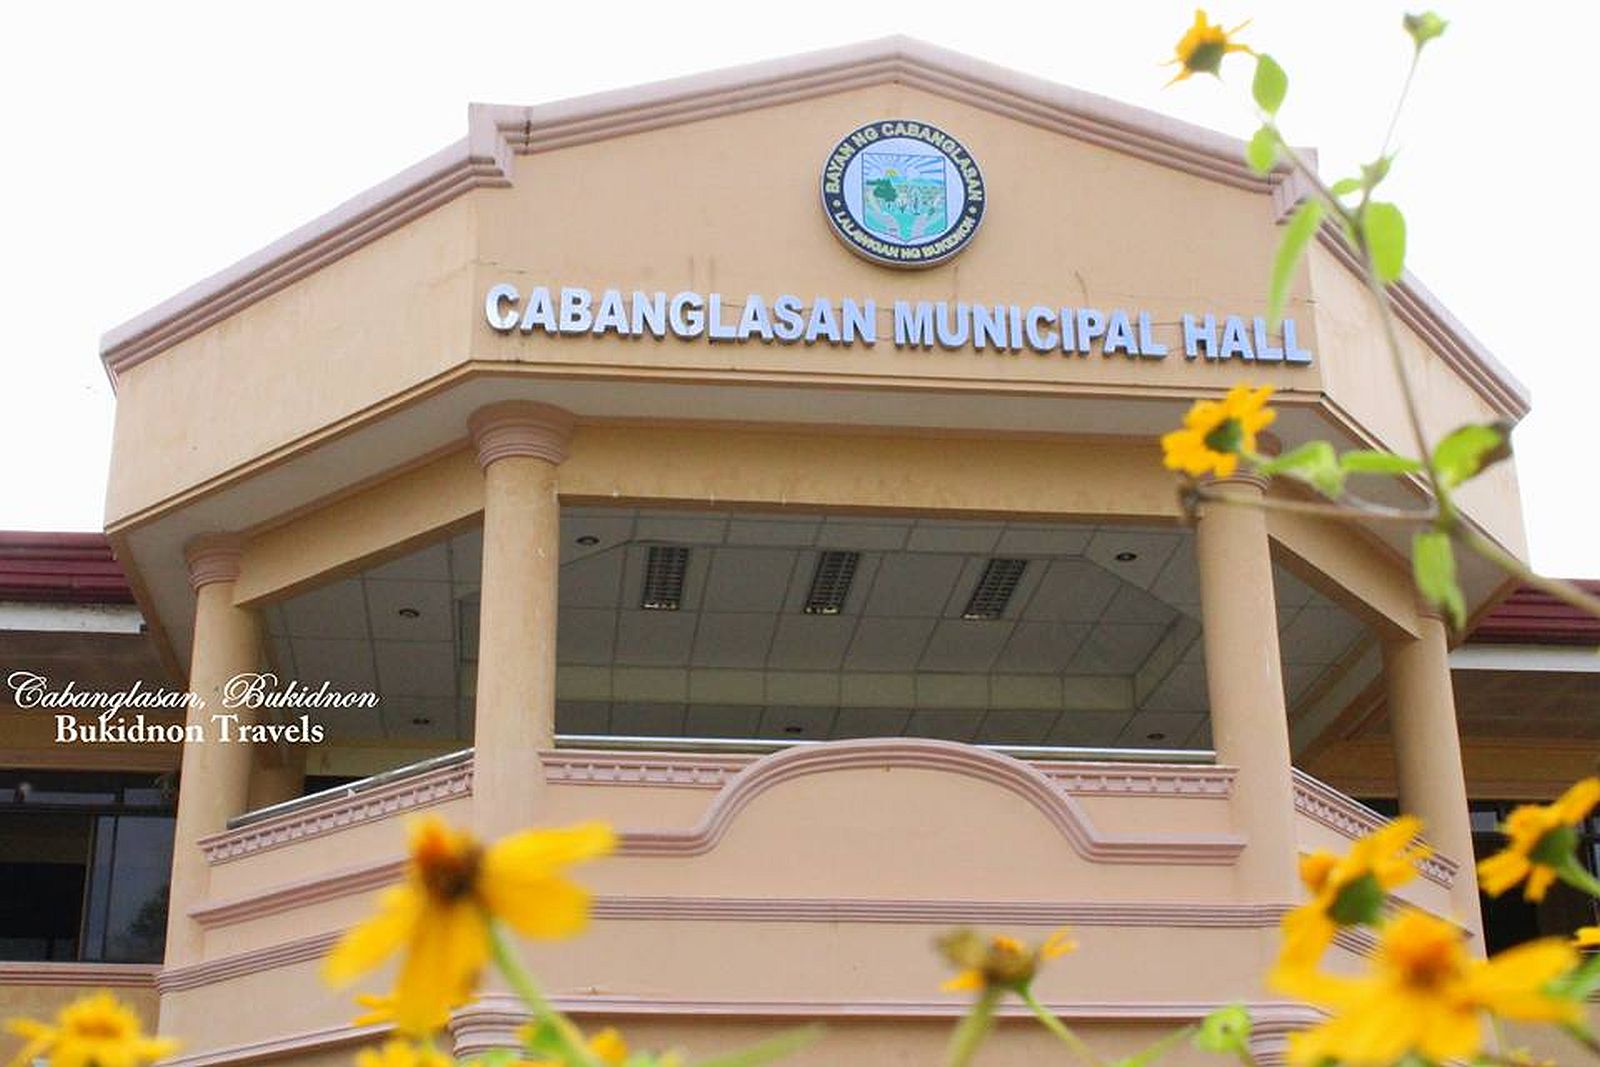 PHILIPPINEN REISEN - ORTE - MINDANAO - BUKIDNON - Touristische Ortsbeschreibung für Cabanglasan